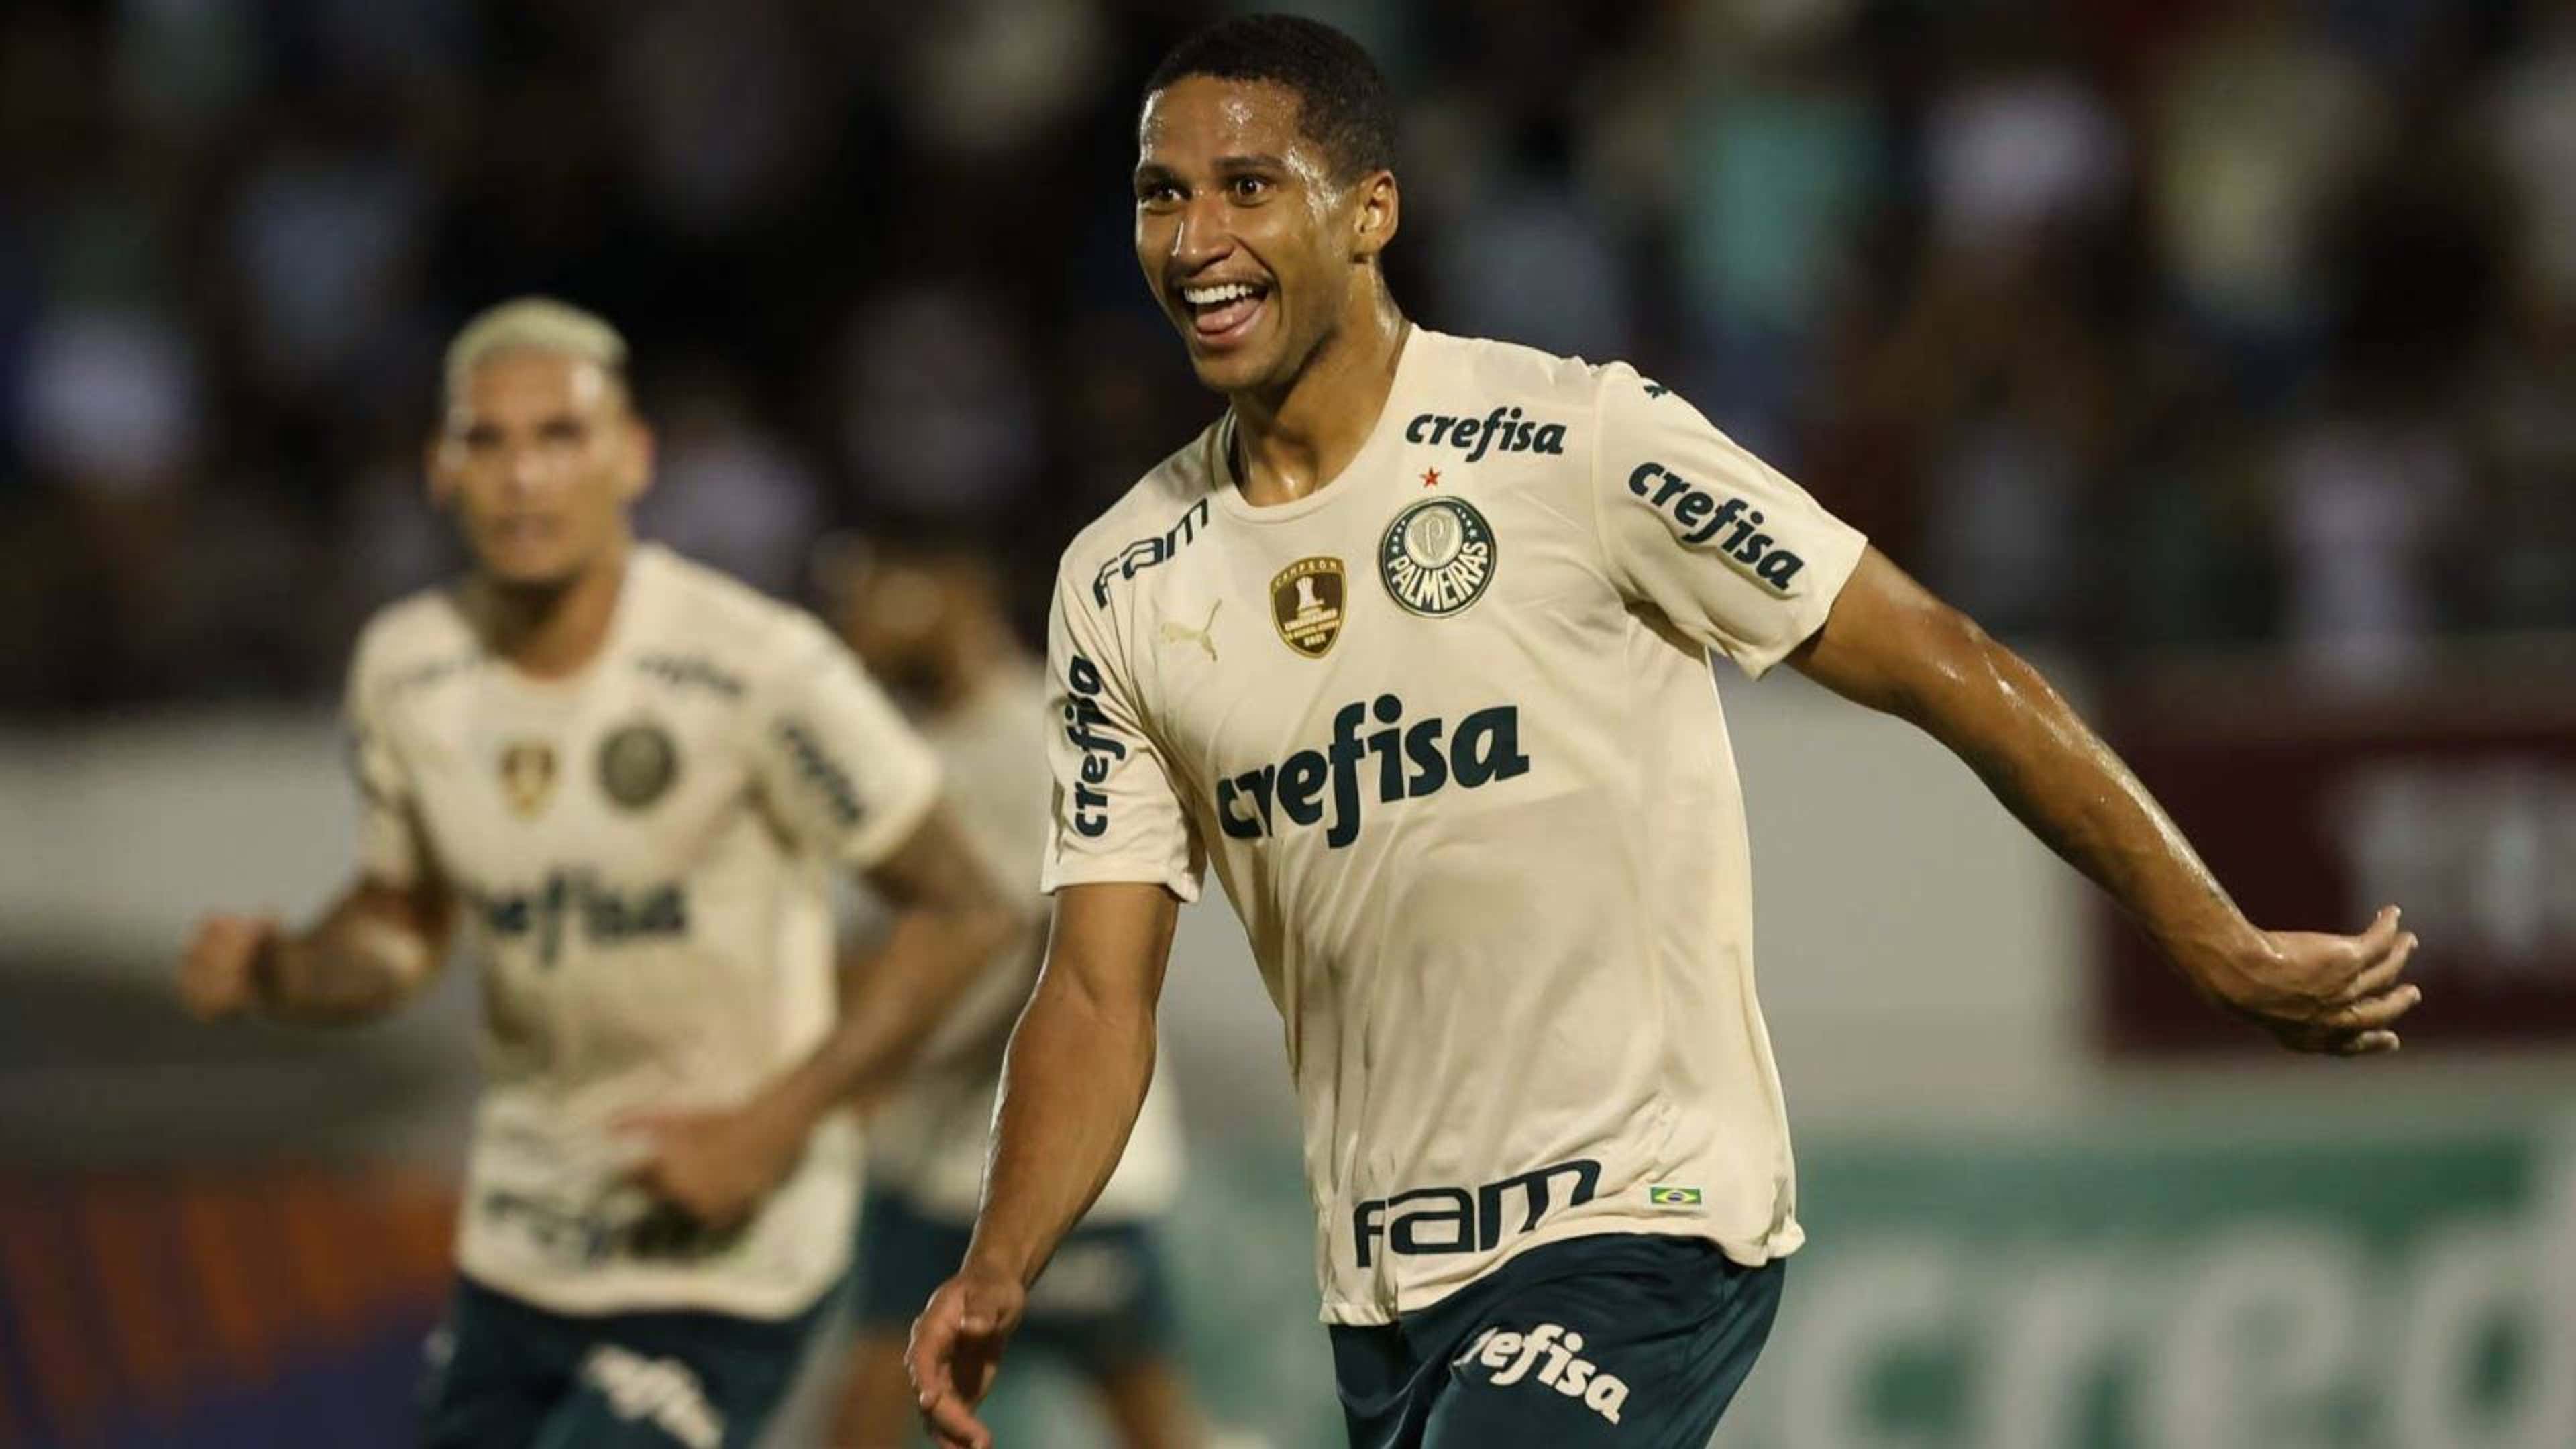 Inter de Limeira x Palmeiras, Veja como assistir ao jogo AO VIVO online